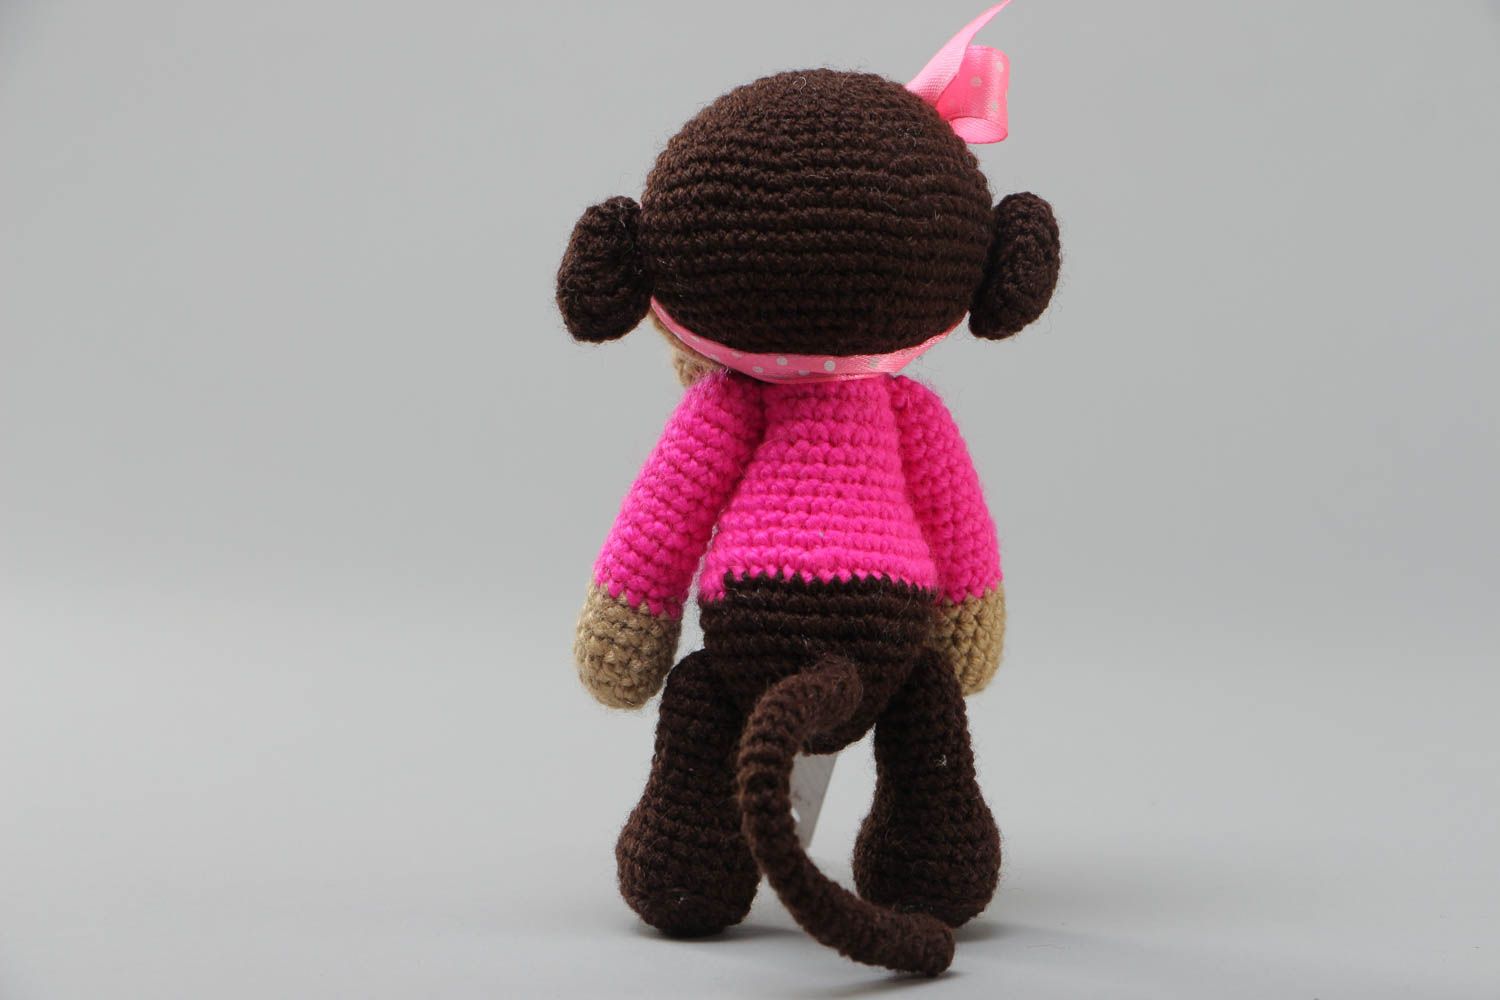 Маленькая мягкая вязаная игрушка обезьянка в розовом крючком из акрила хэнд мэйд фото 4